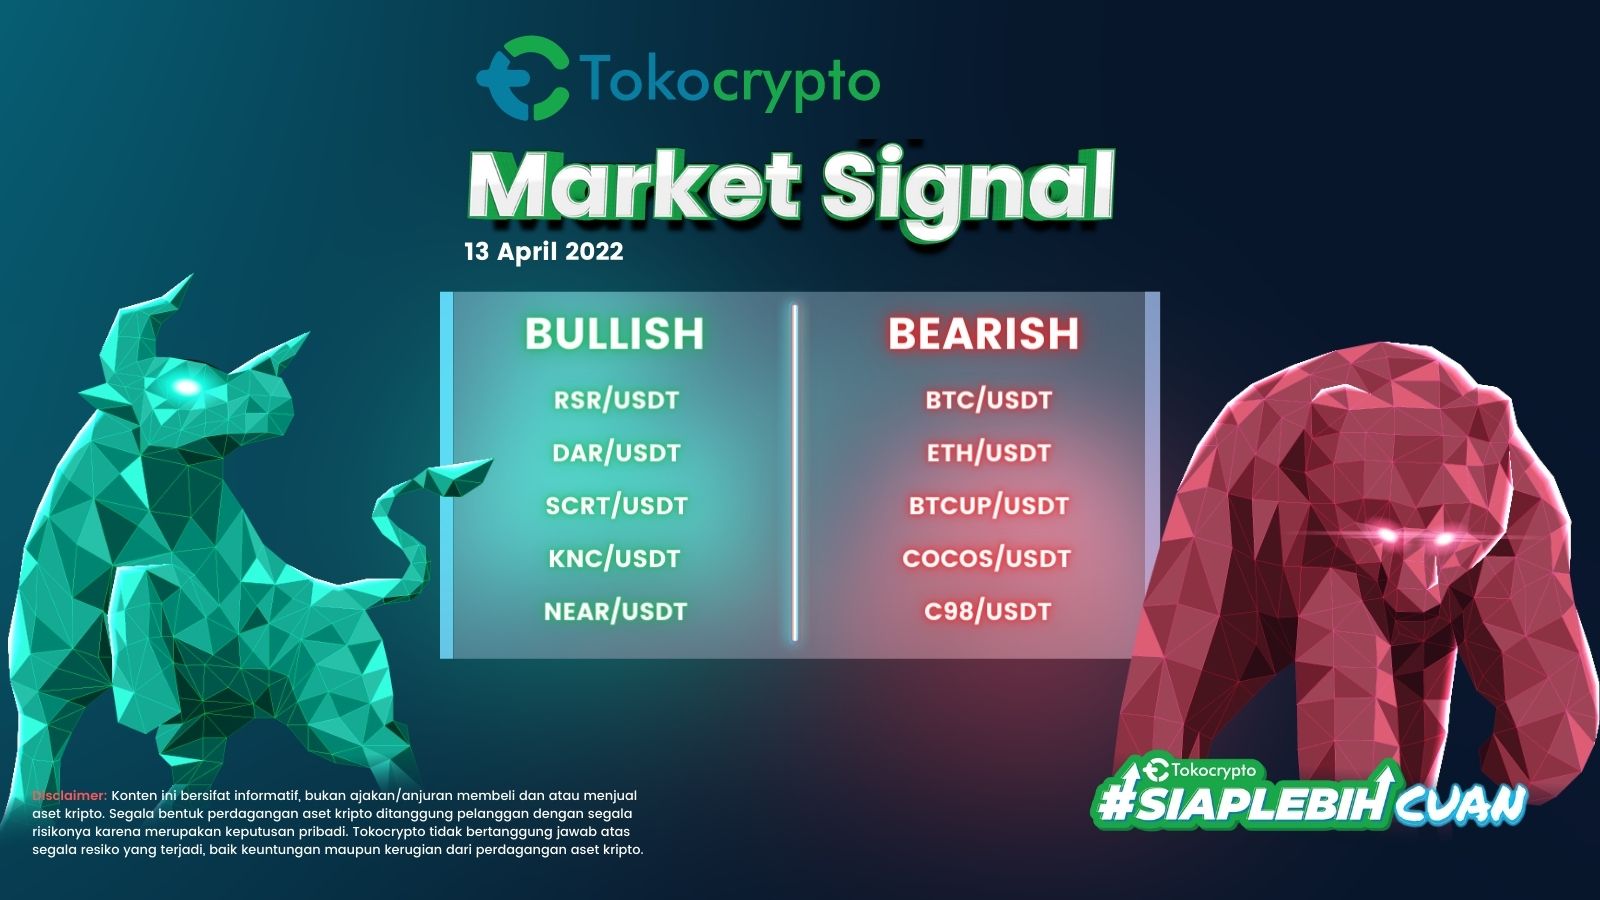 Ilustrasi Tokocrypto Market Signal 13 April 2022.